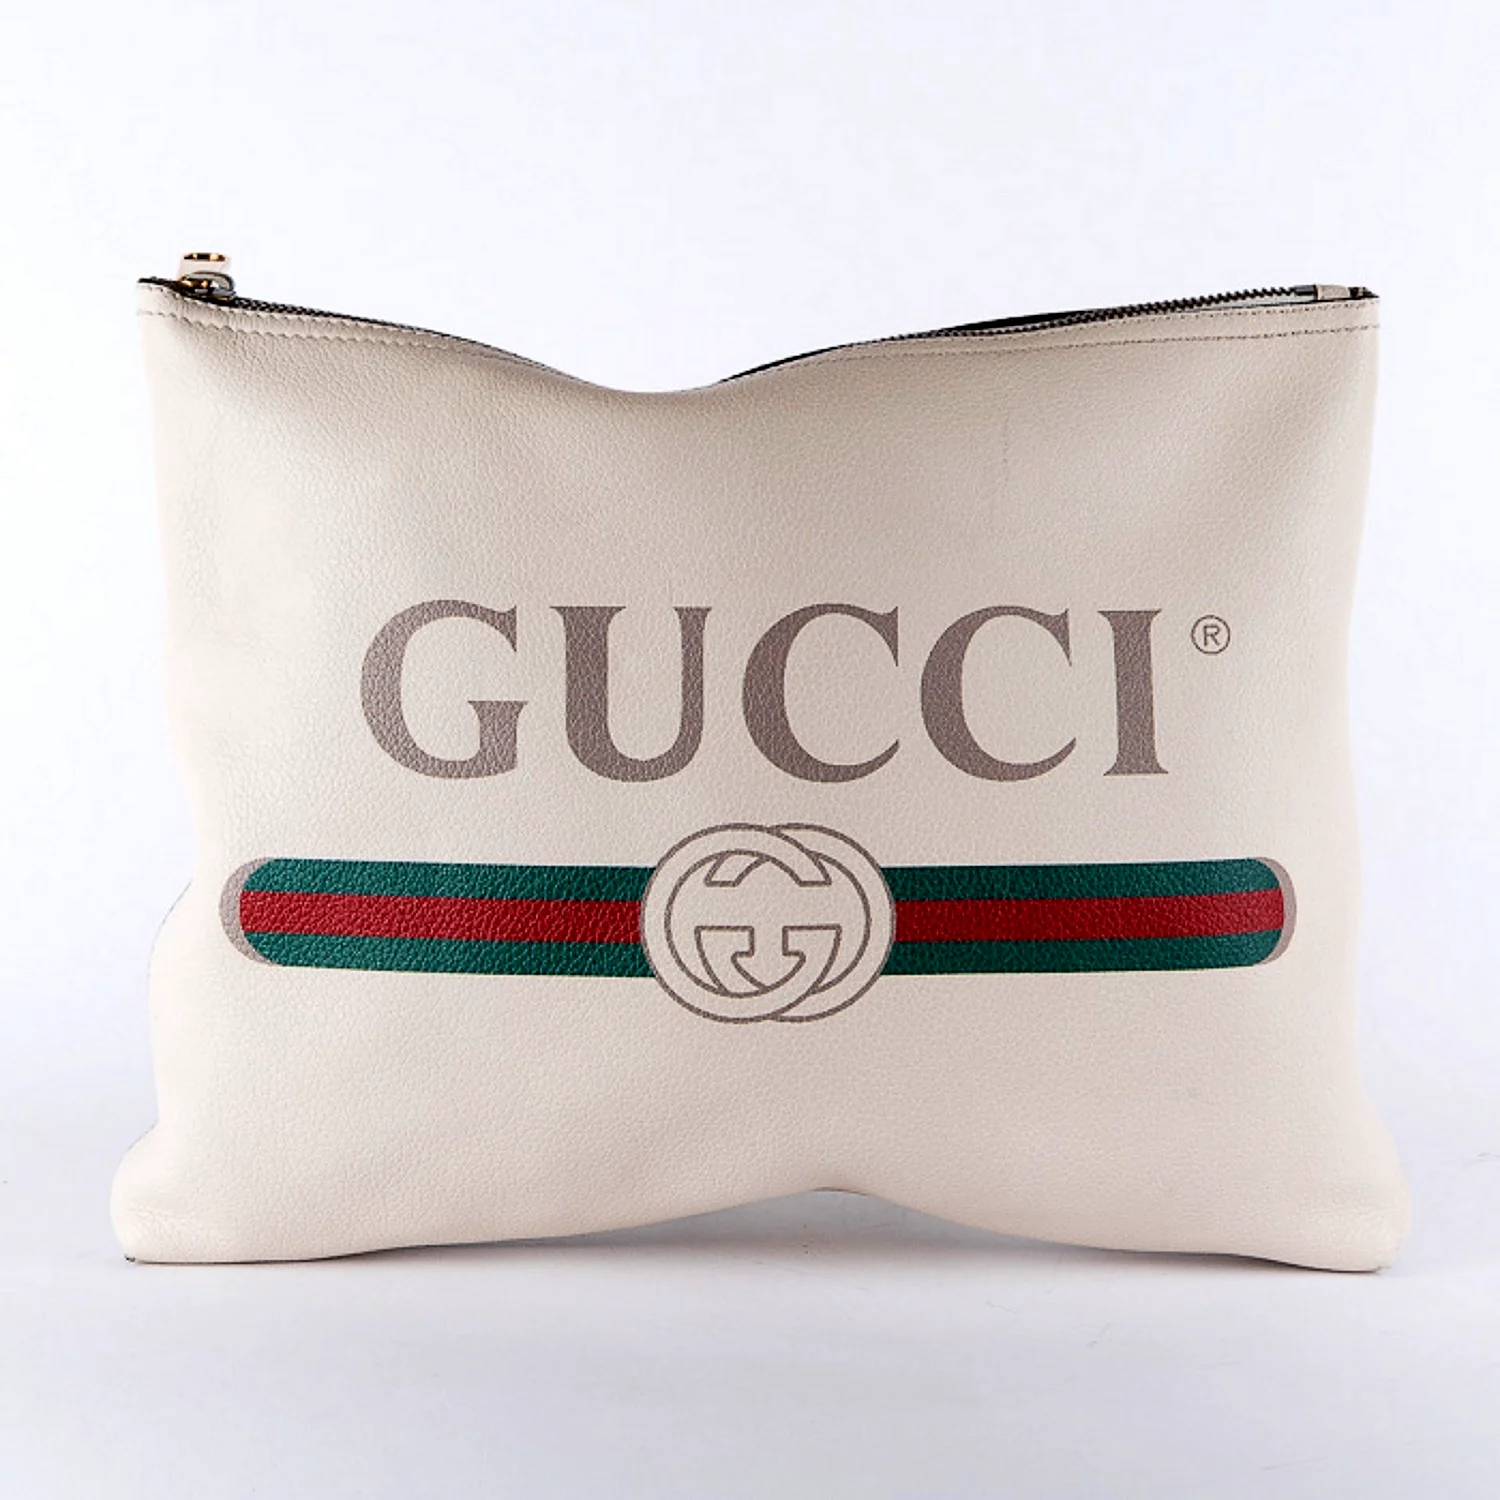 Gucci present